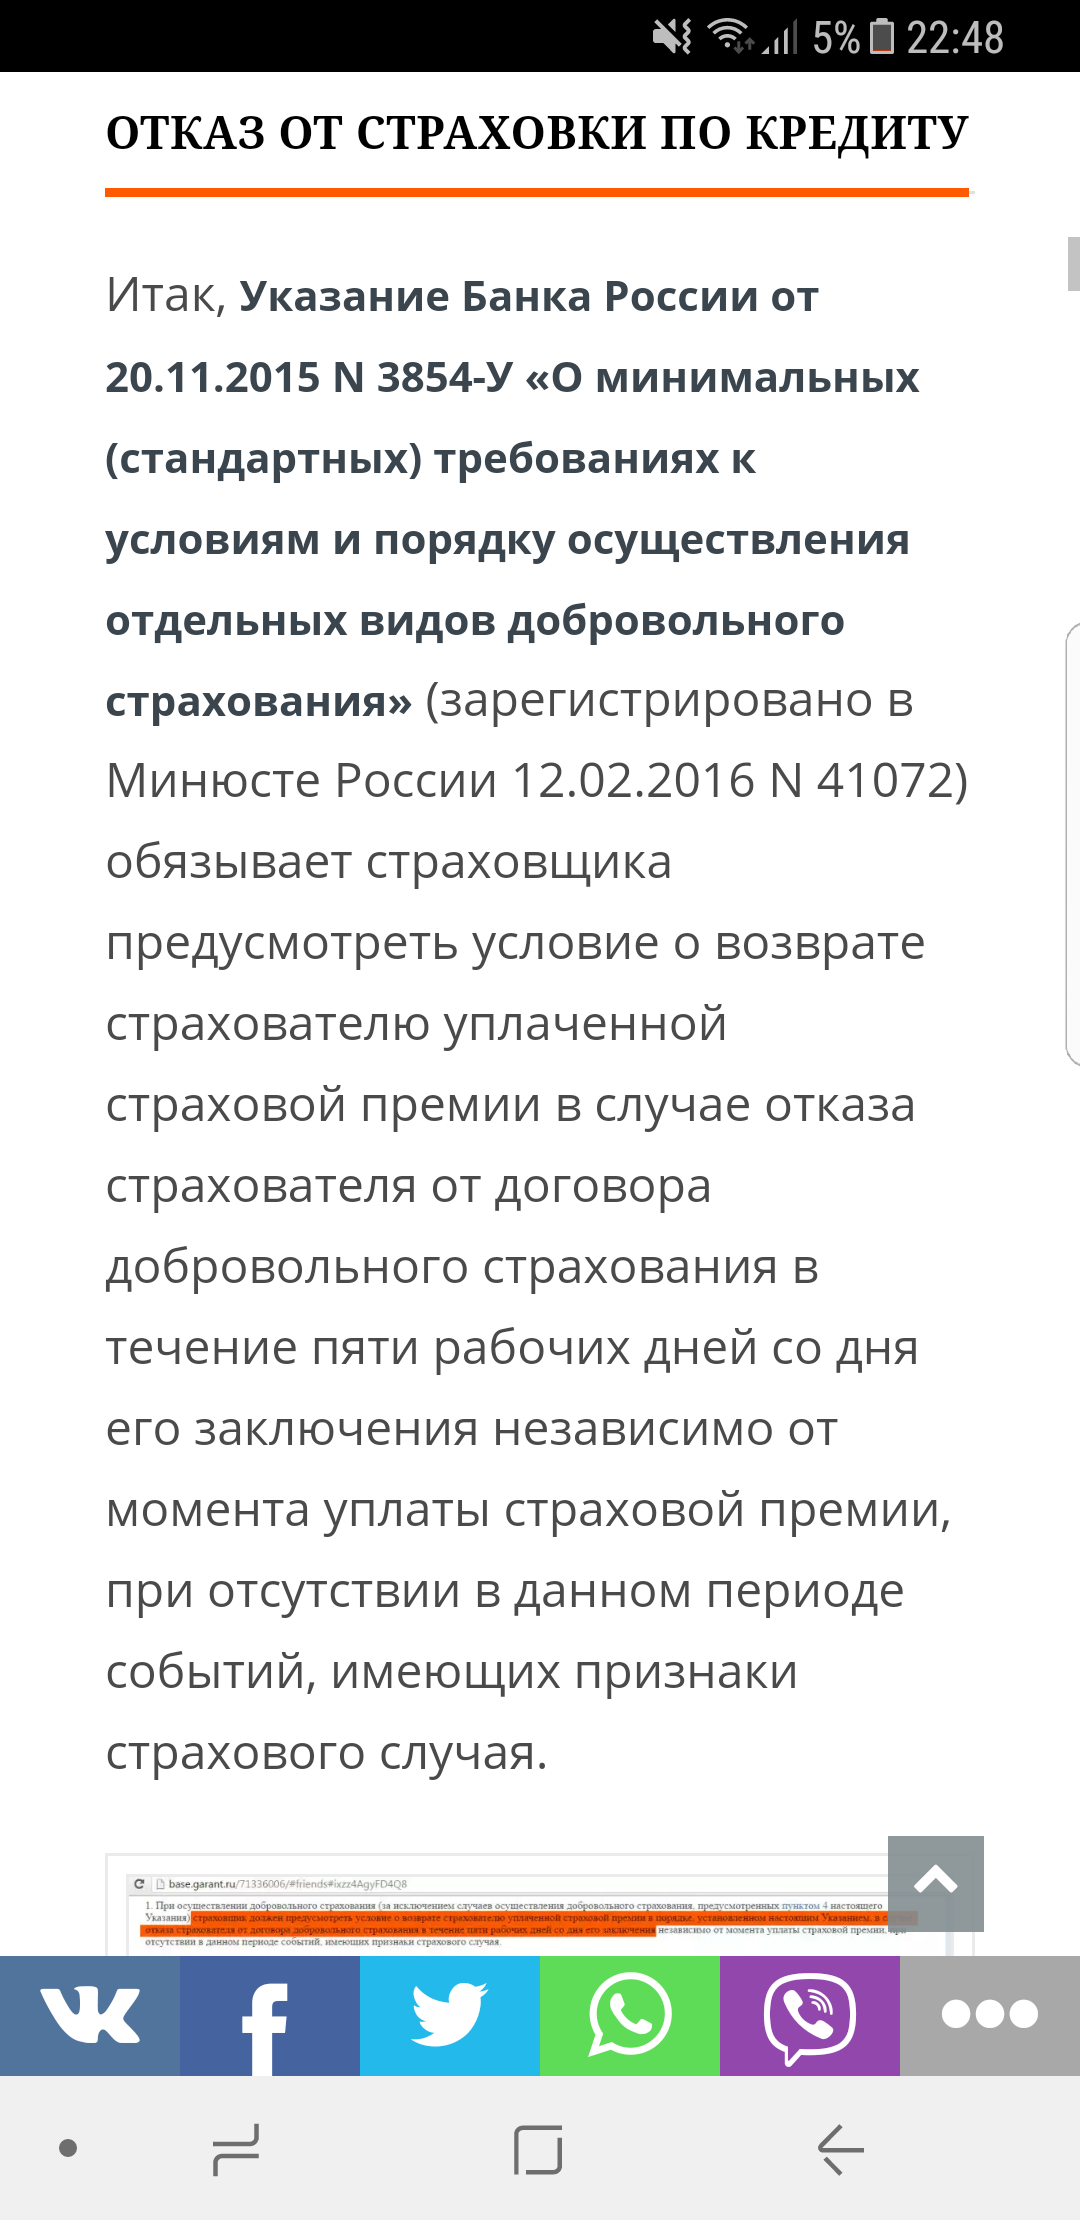 Саяногорск Инфо - screenshot_20170622-224806.png, Скачано: 472